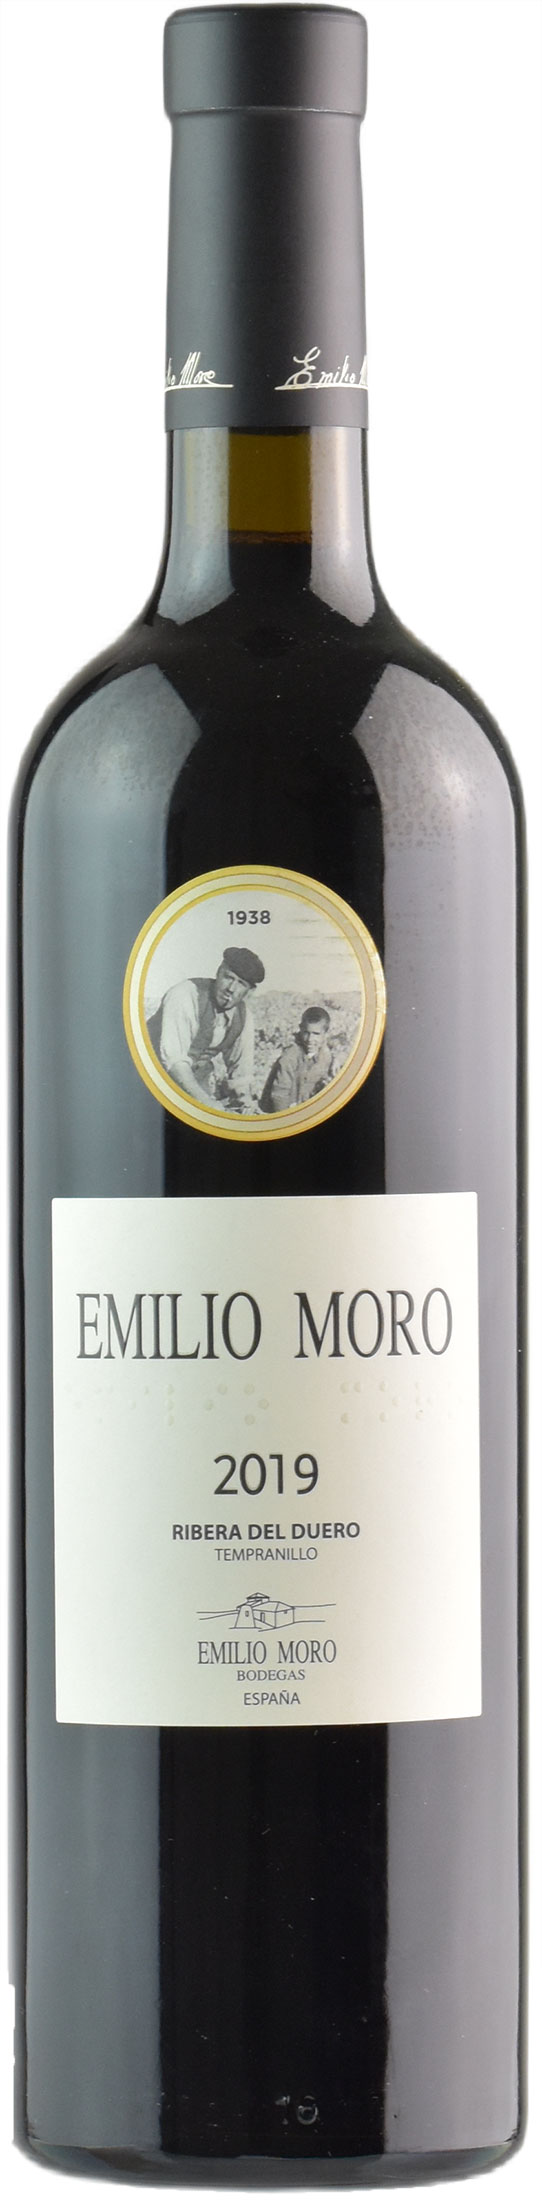 Emilio Moro Emilio Moro